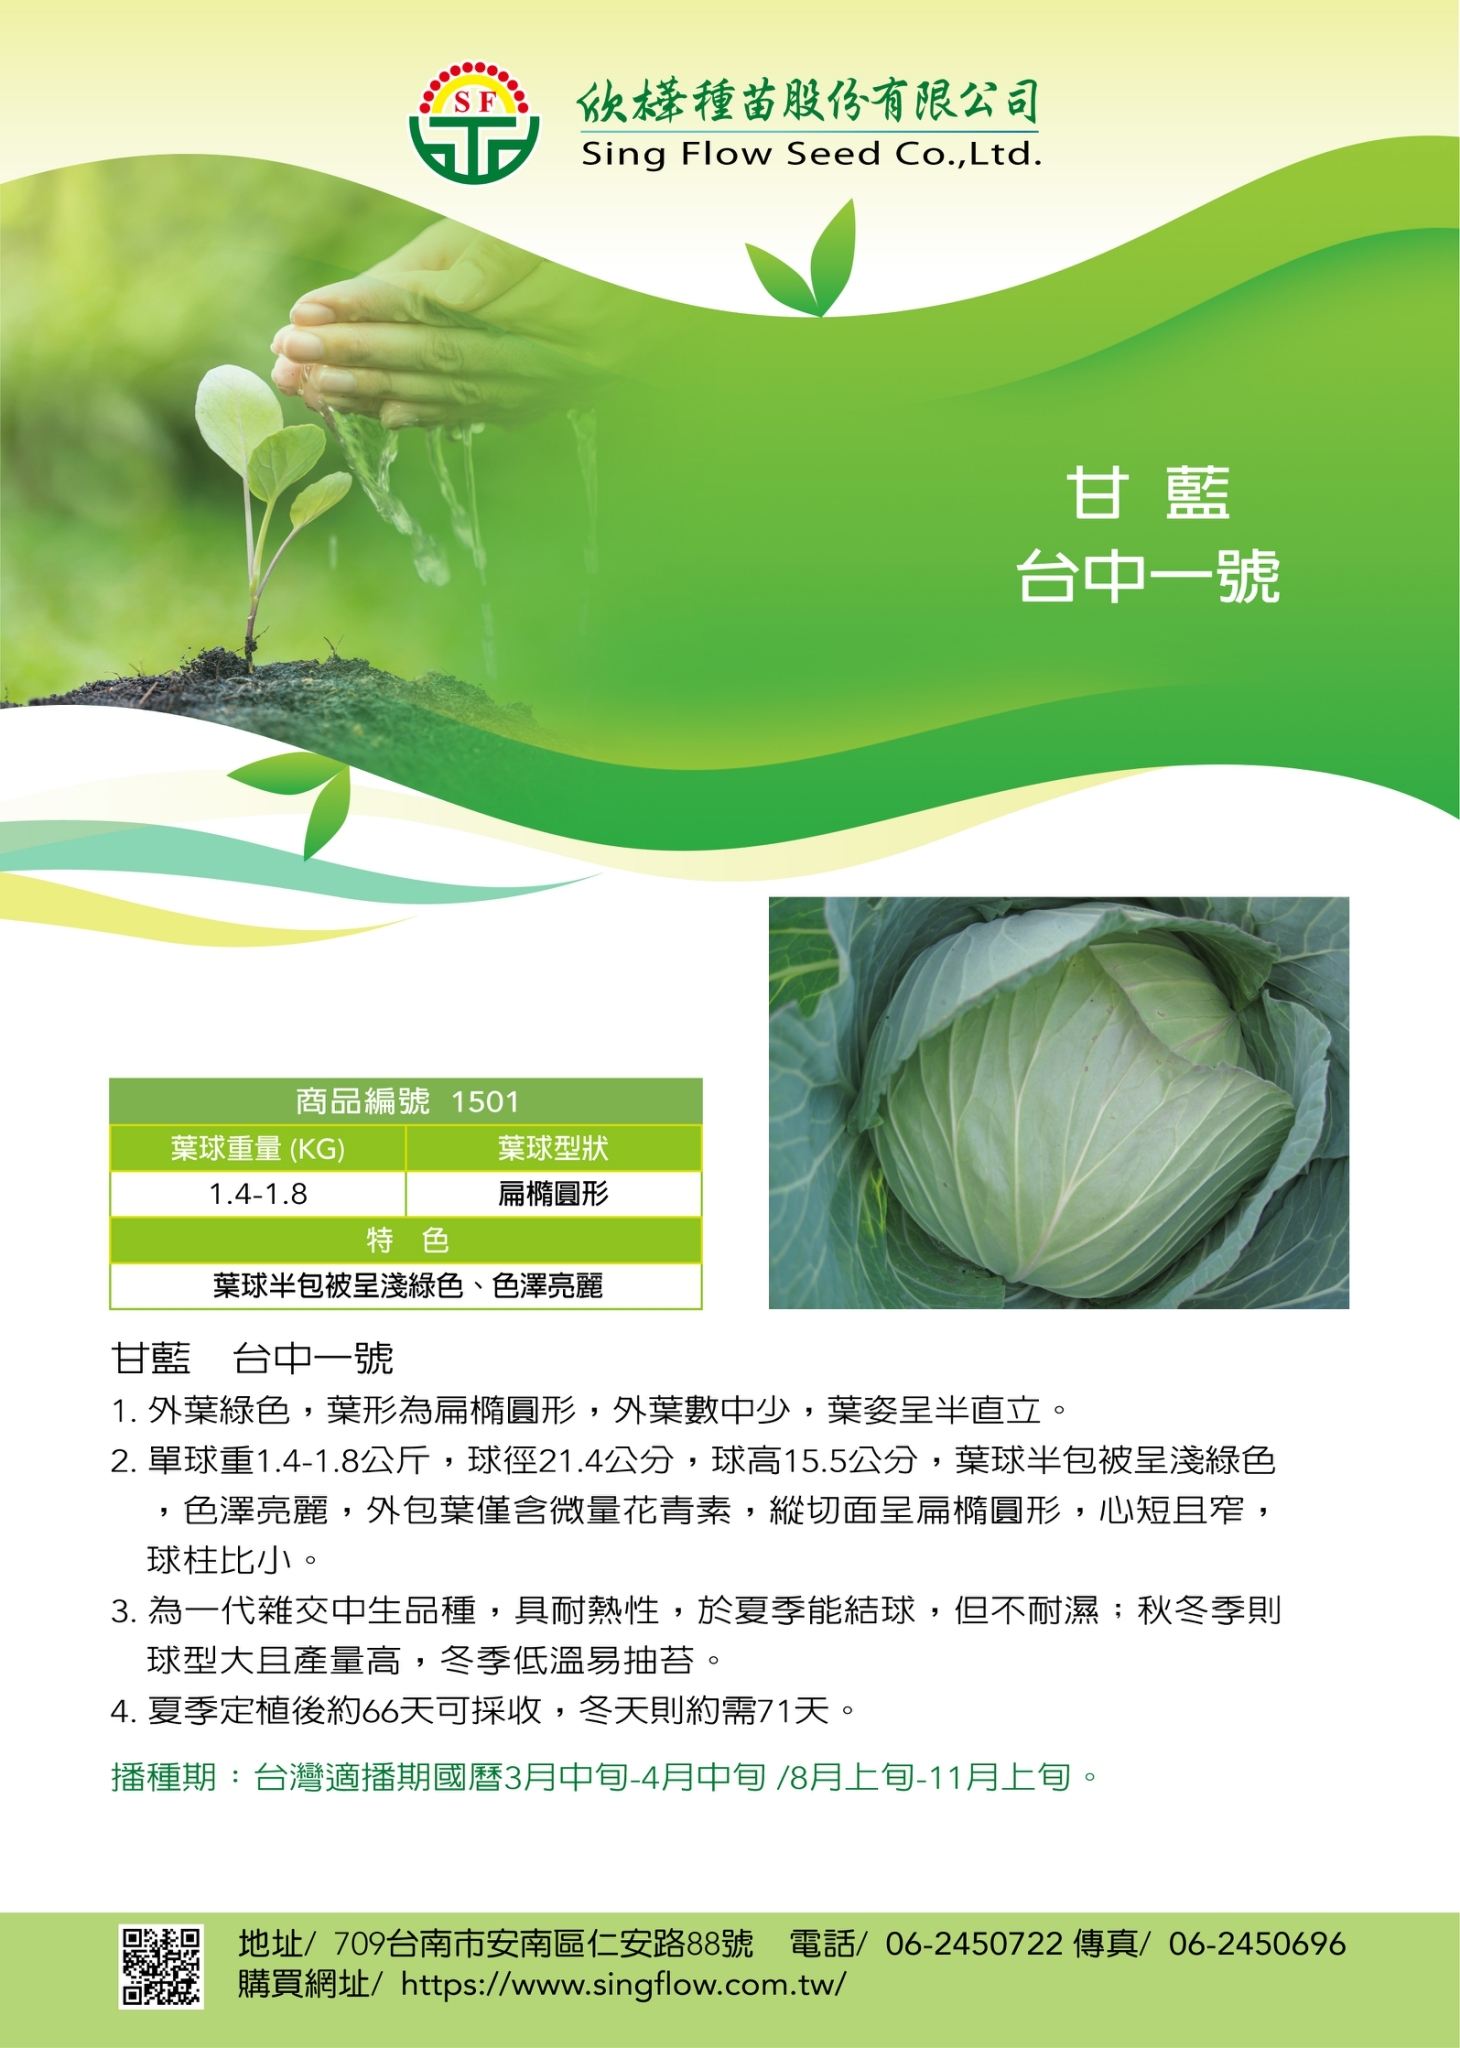 甘藍 清夏一號(舊稱為台中1號) 高麗菜種子